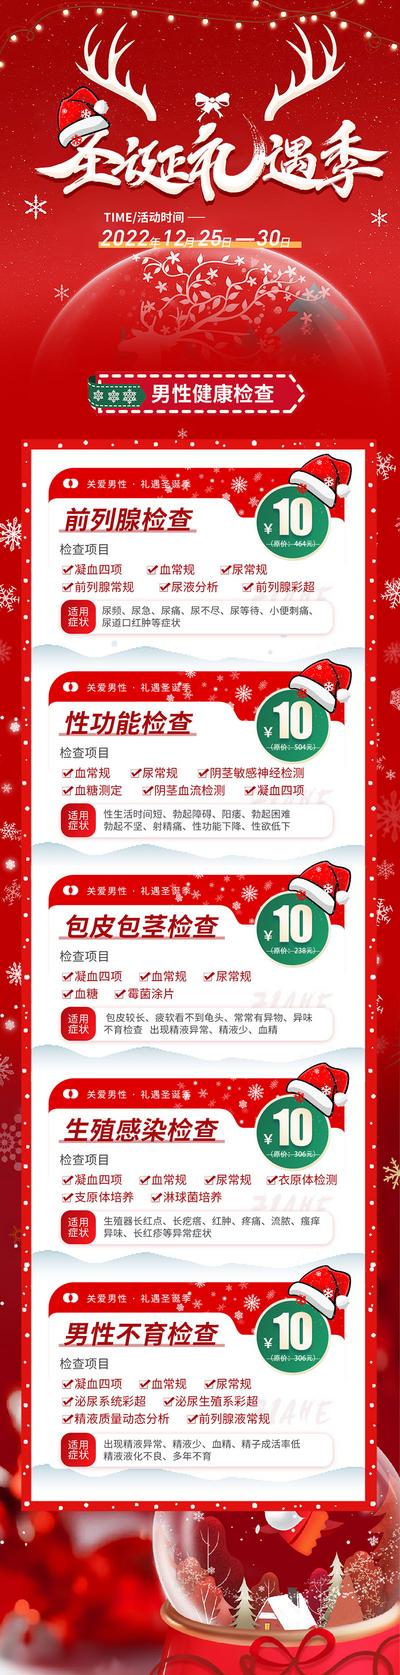 【南门网】广告 海报 节日 圣诞 专题 促销 套餐 医院 体检 检查